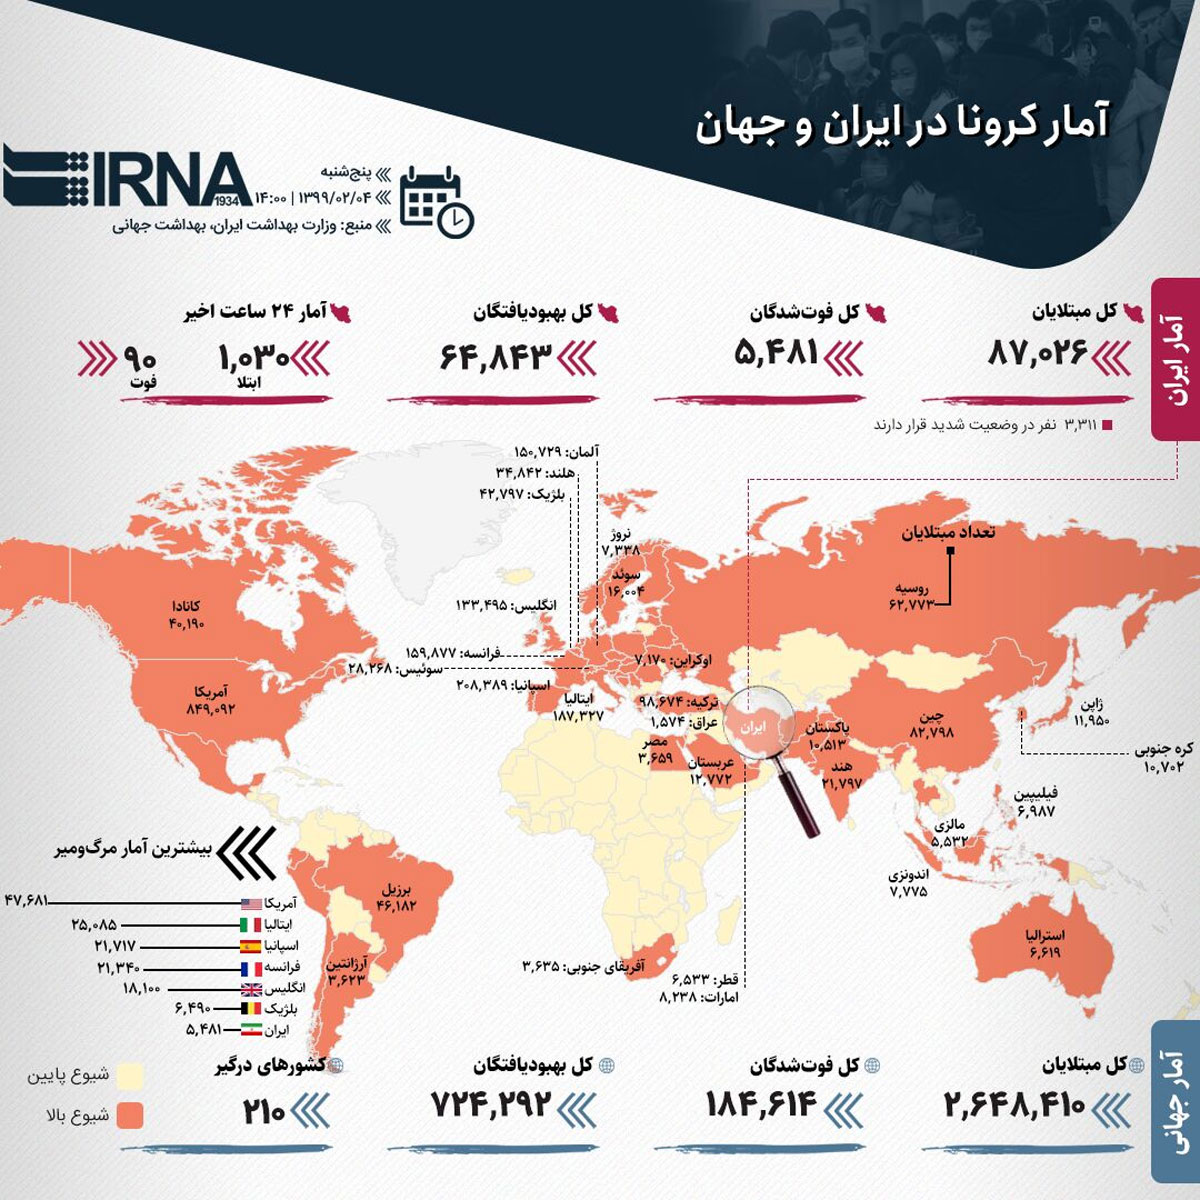  آمار کرونا در ایران و جهان (۱۳۹۹/۰۲/۰۴)